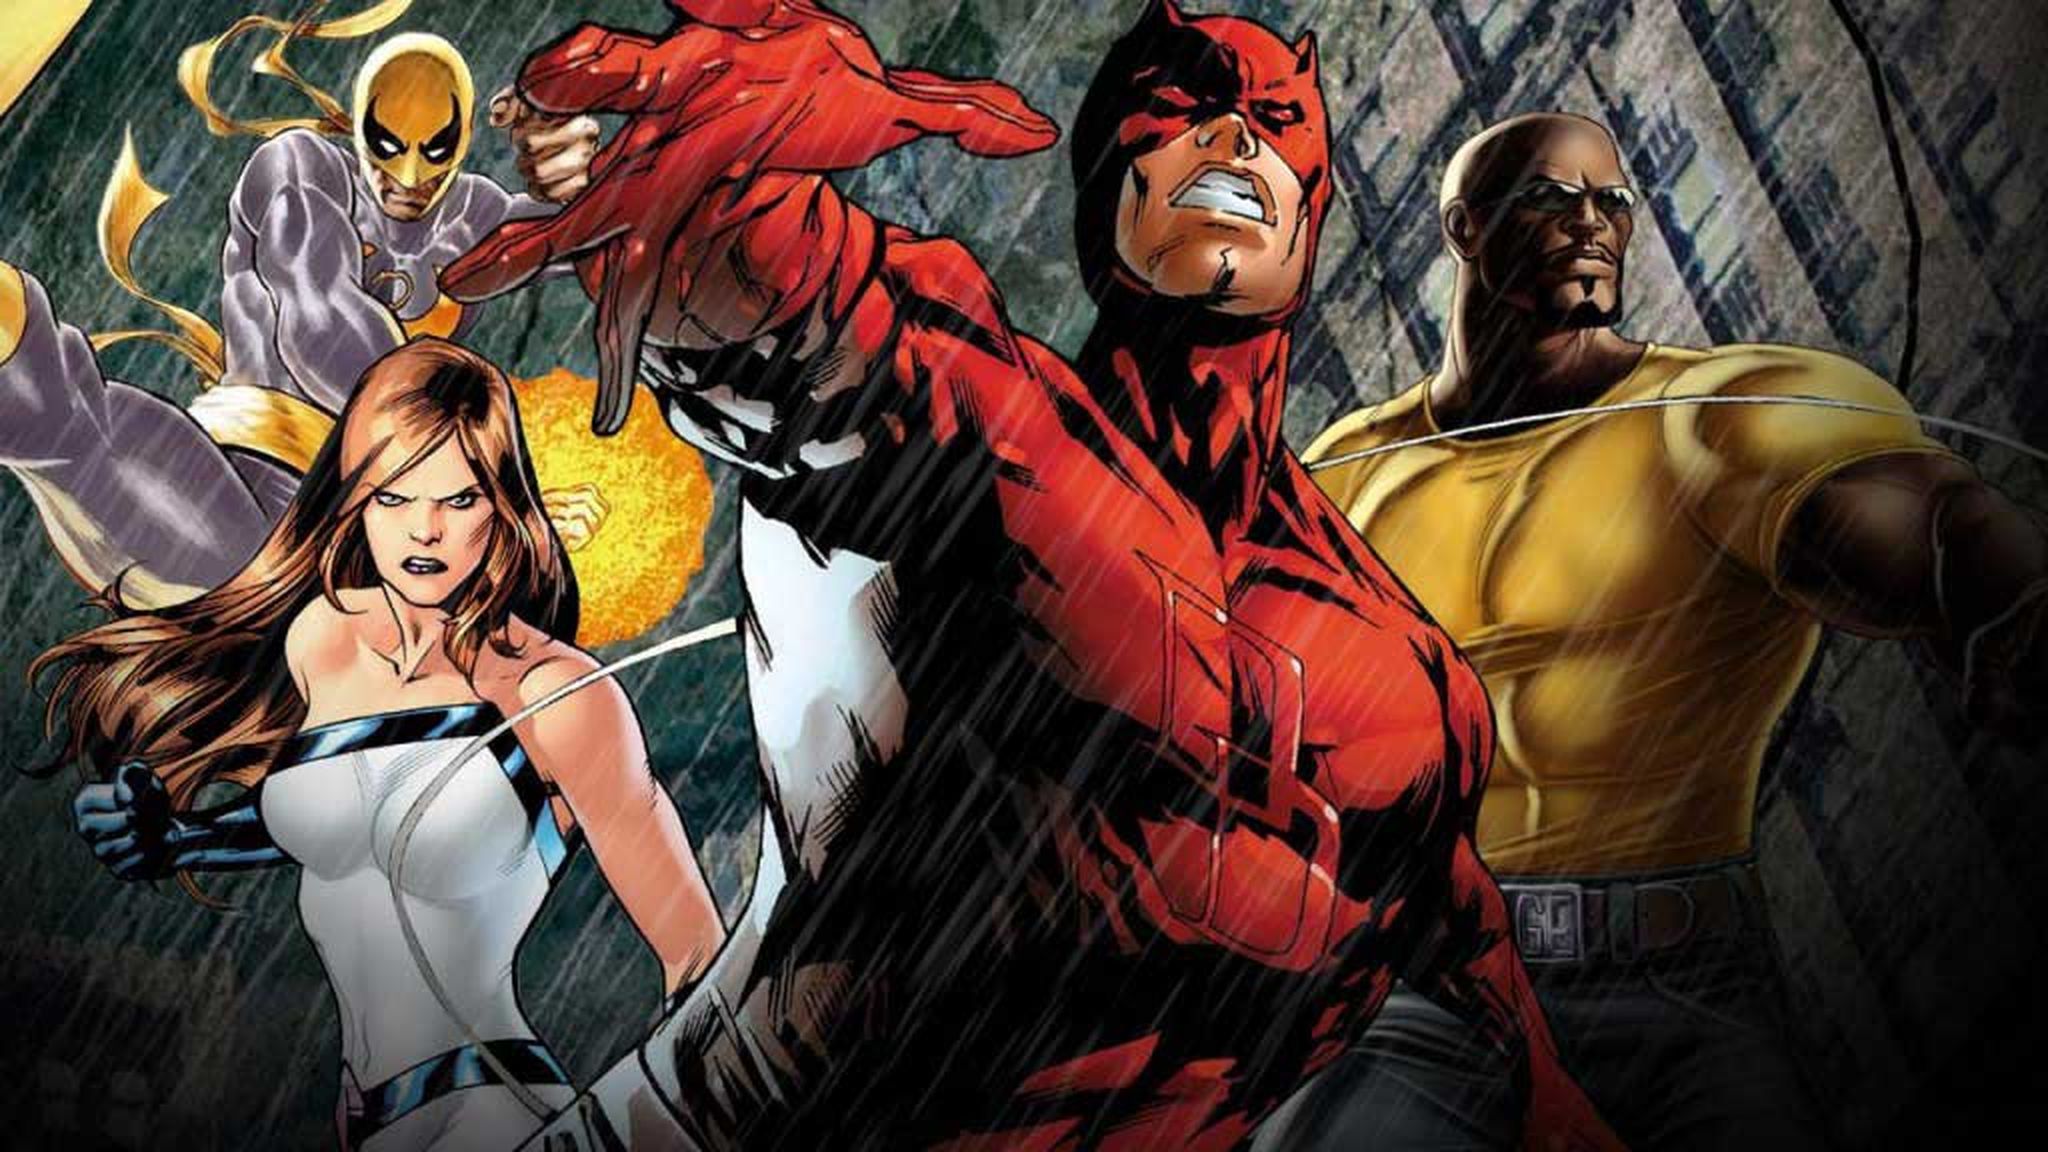 The Defenders - ¿Quiénes son los "Vengadores" de Netflix y Marvel?